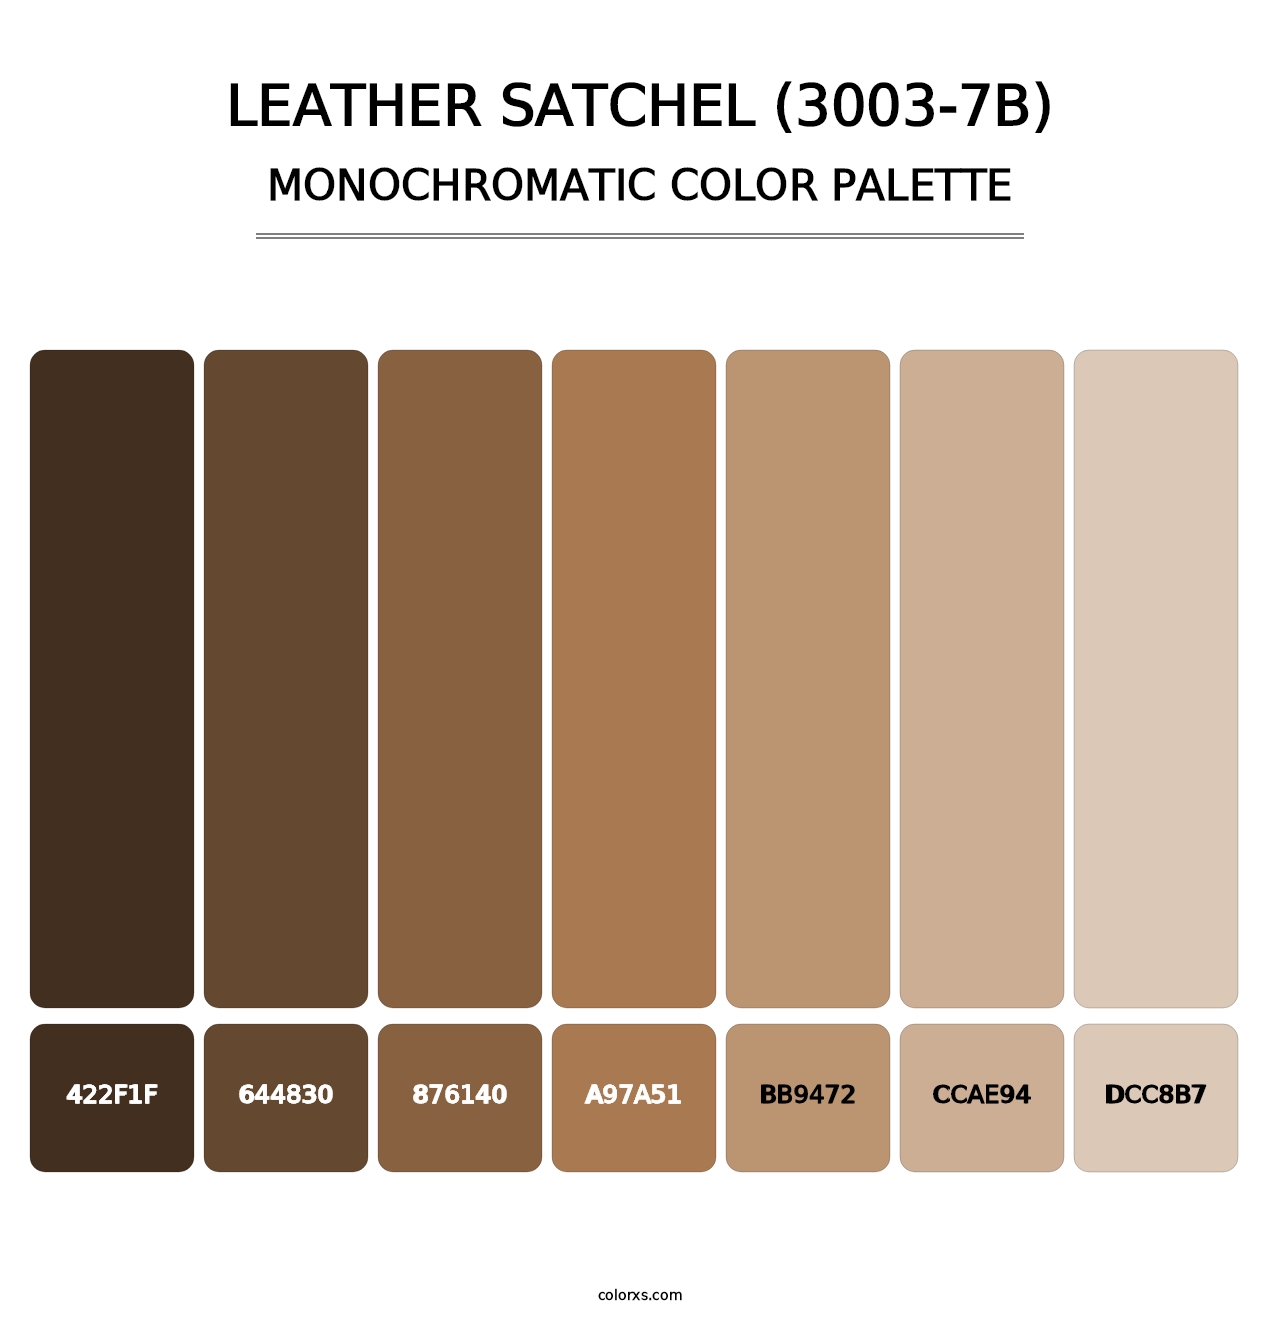 Leather Satchel (3003-7B) - Monochromatic Color Palette